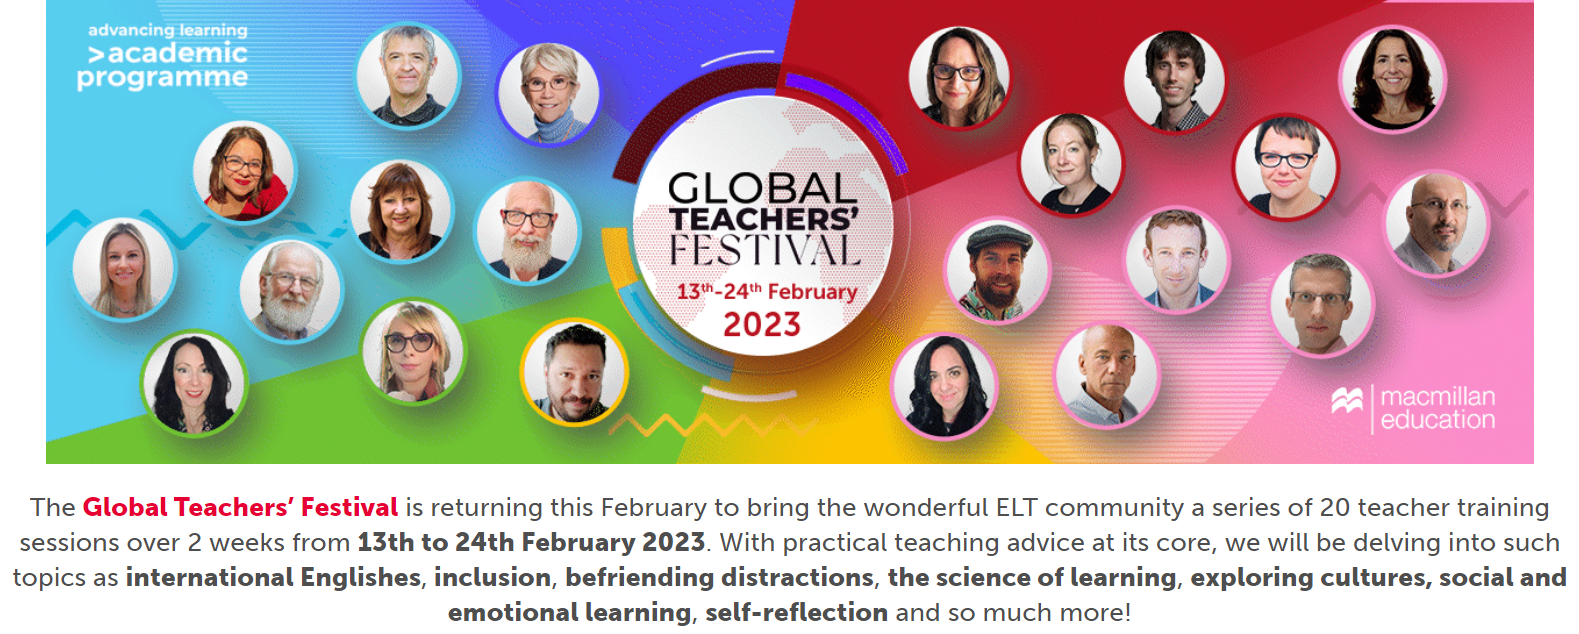 Global Teachers’ Festival